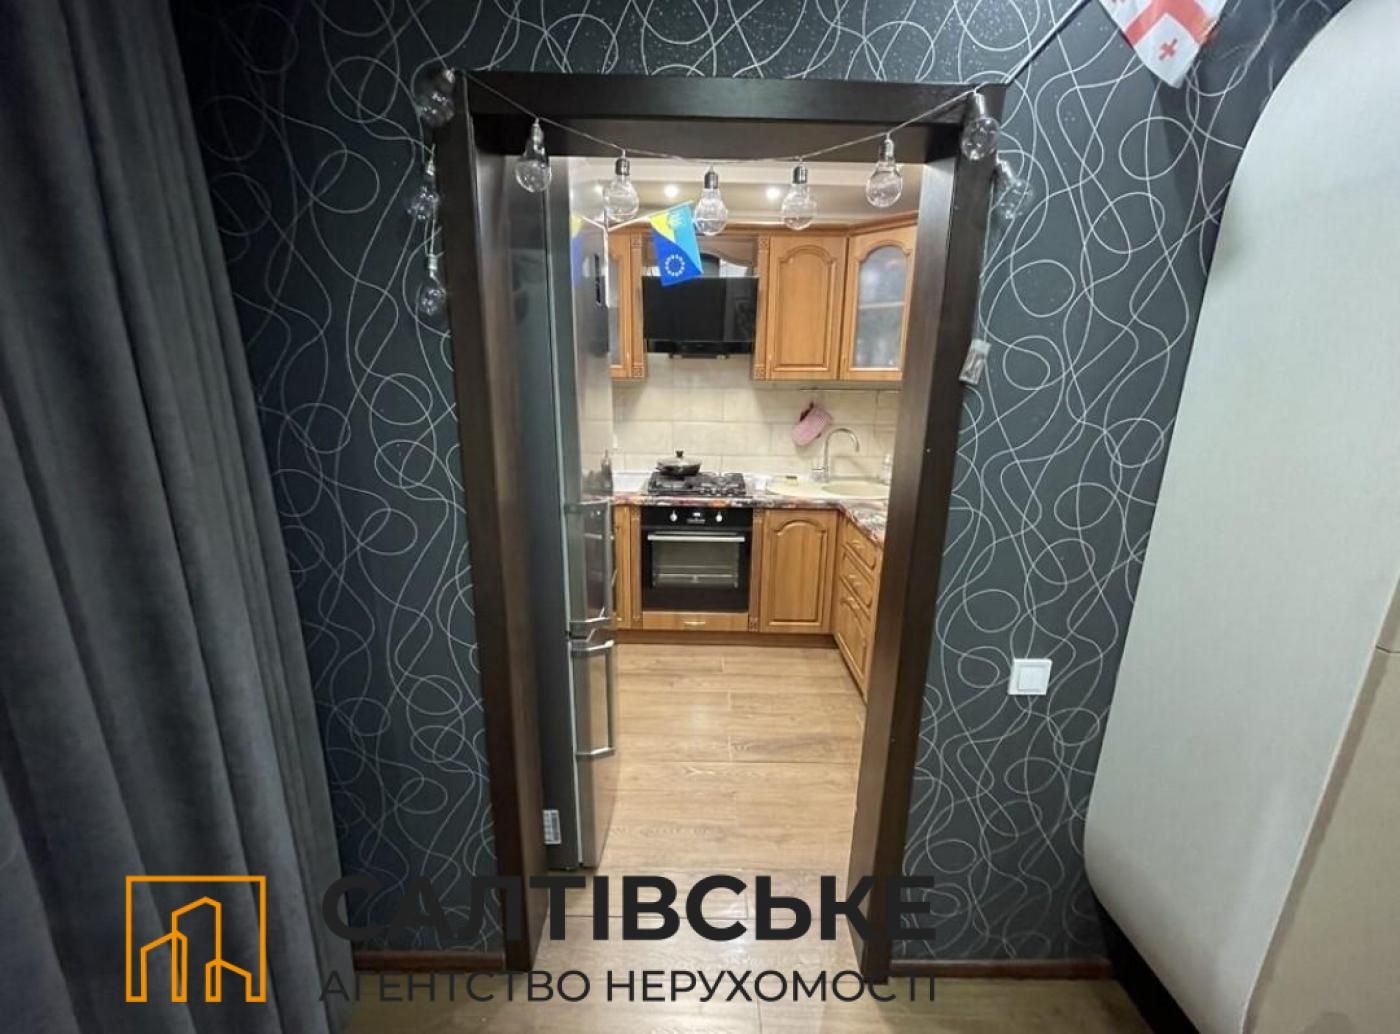 ЮЛ-7881 Продам 3к квартиру на Салтовке  ТРК Украина 603 м/р